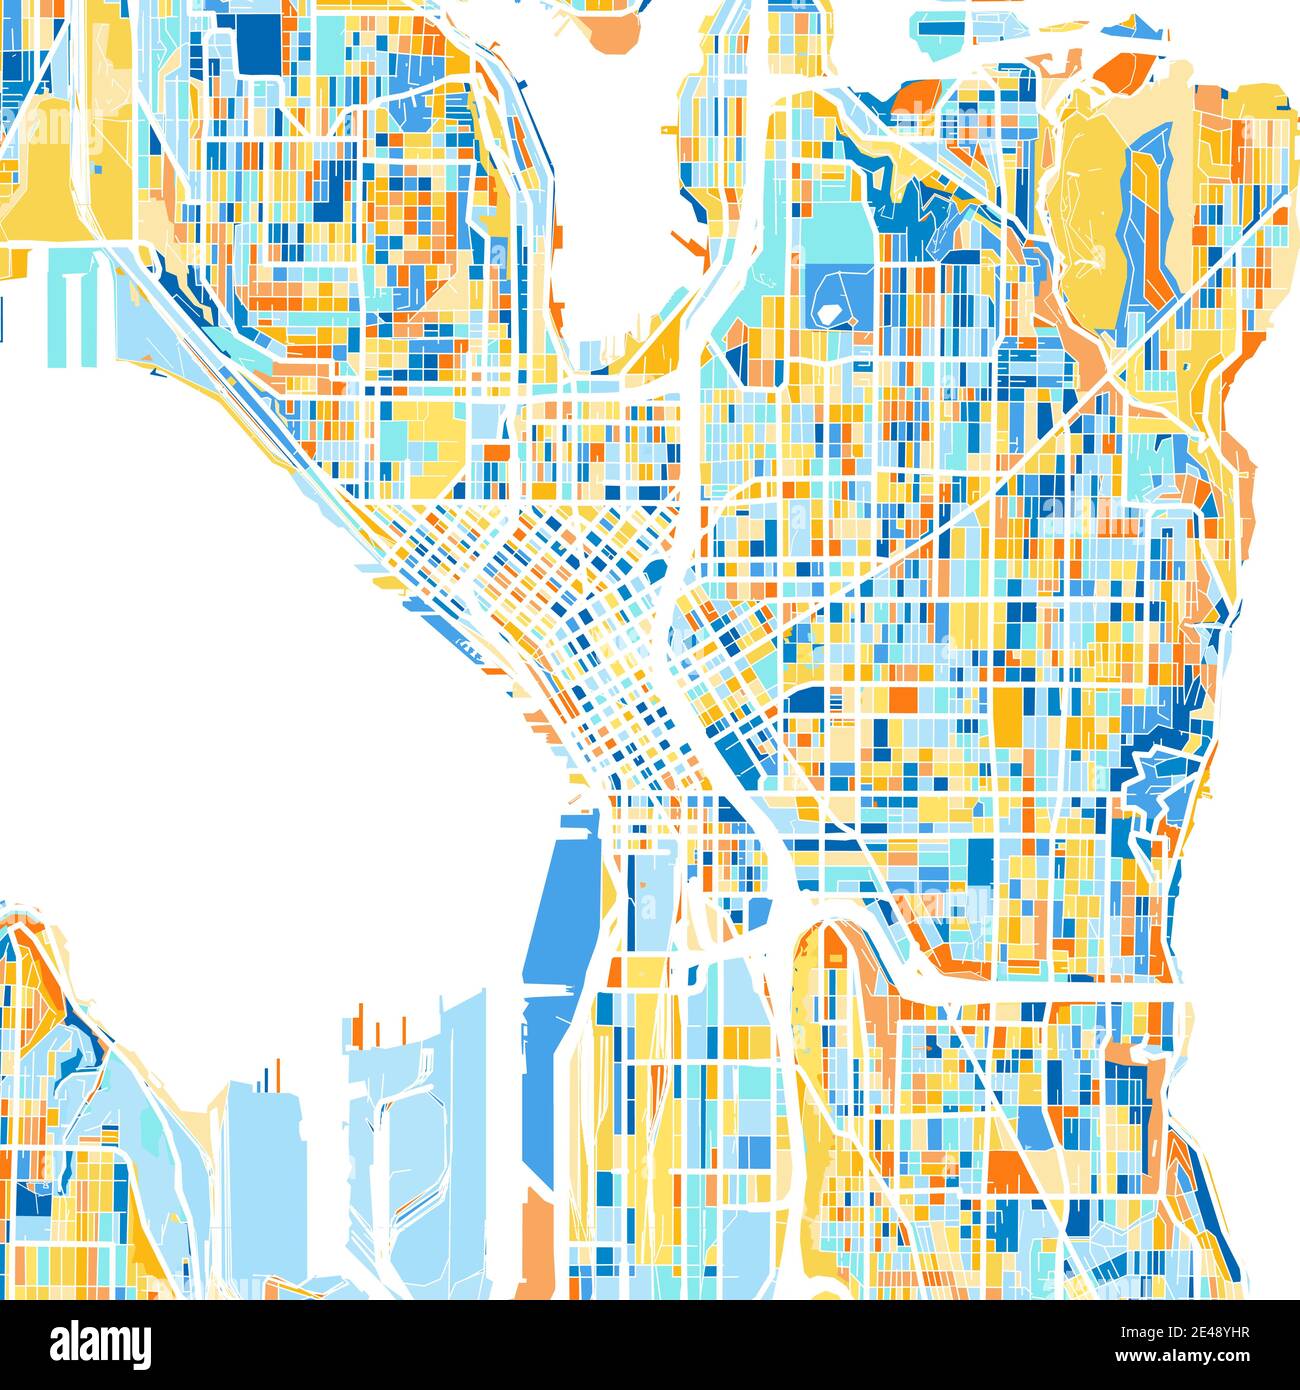 Farbkunstkarte von Seattle, Washington, UnitedStates in Blau und Orangen. Die Farbabstufungen in der Seattle-Karte folgen einem zufälligen Muster. Stock Vektor